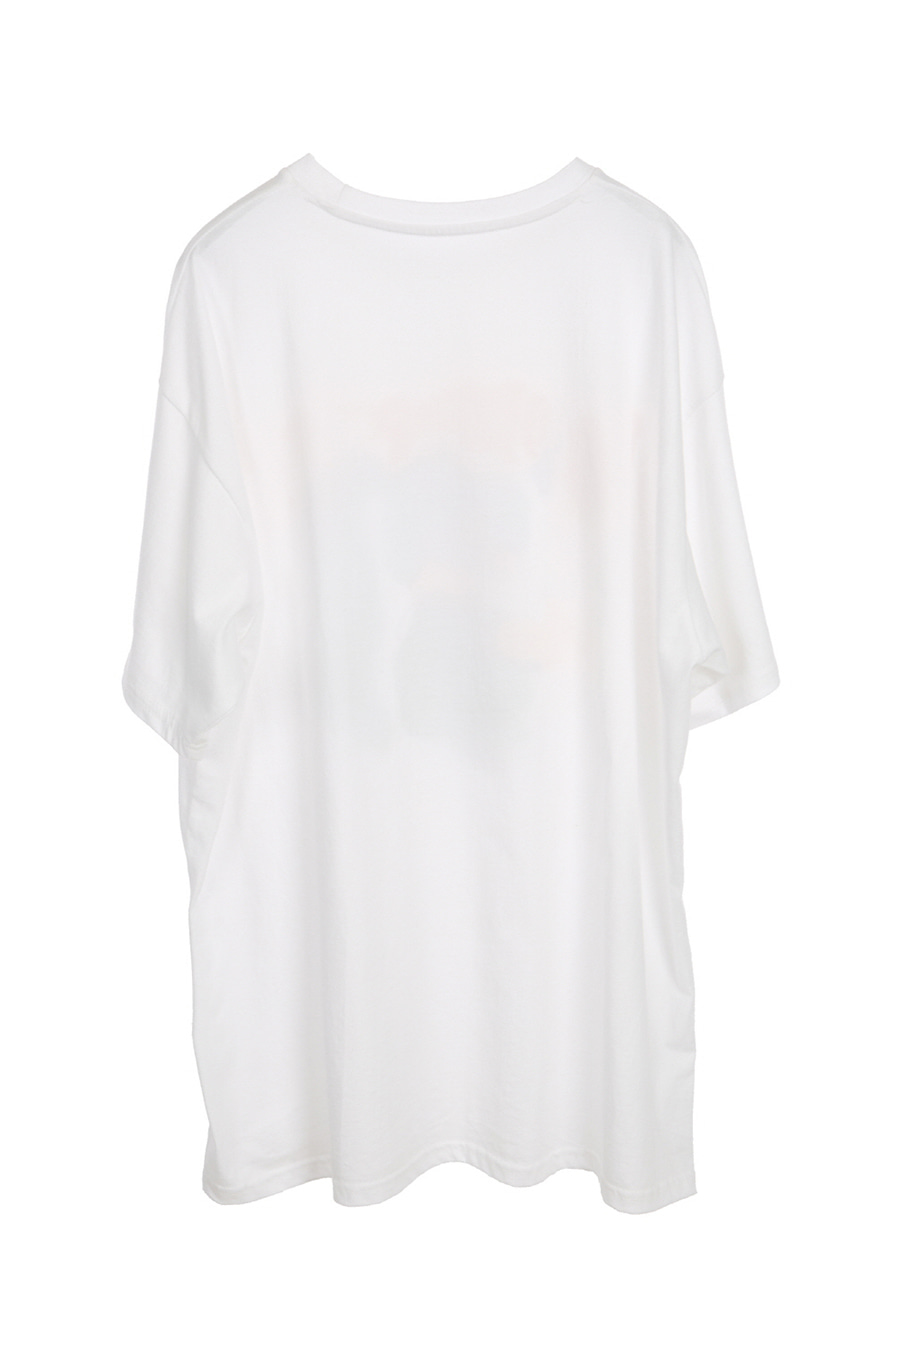 Bloodthirster T-Shirt - White